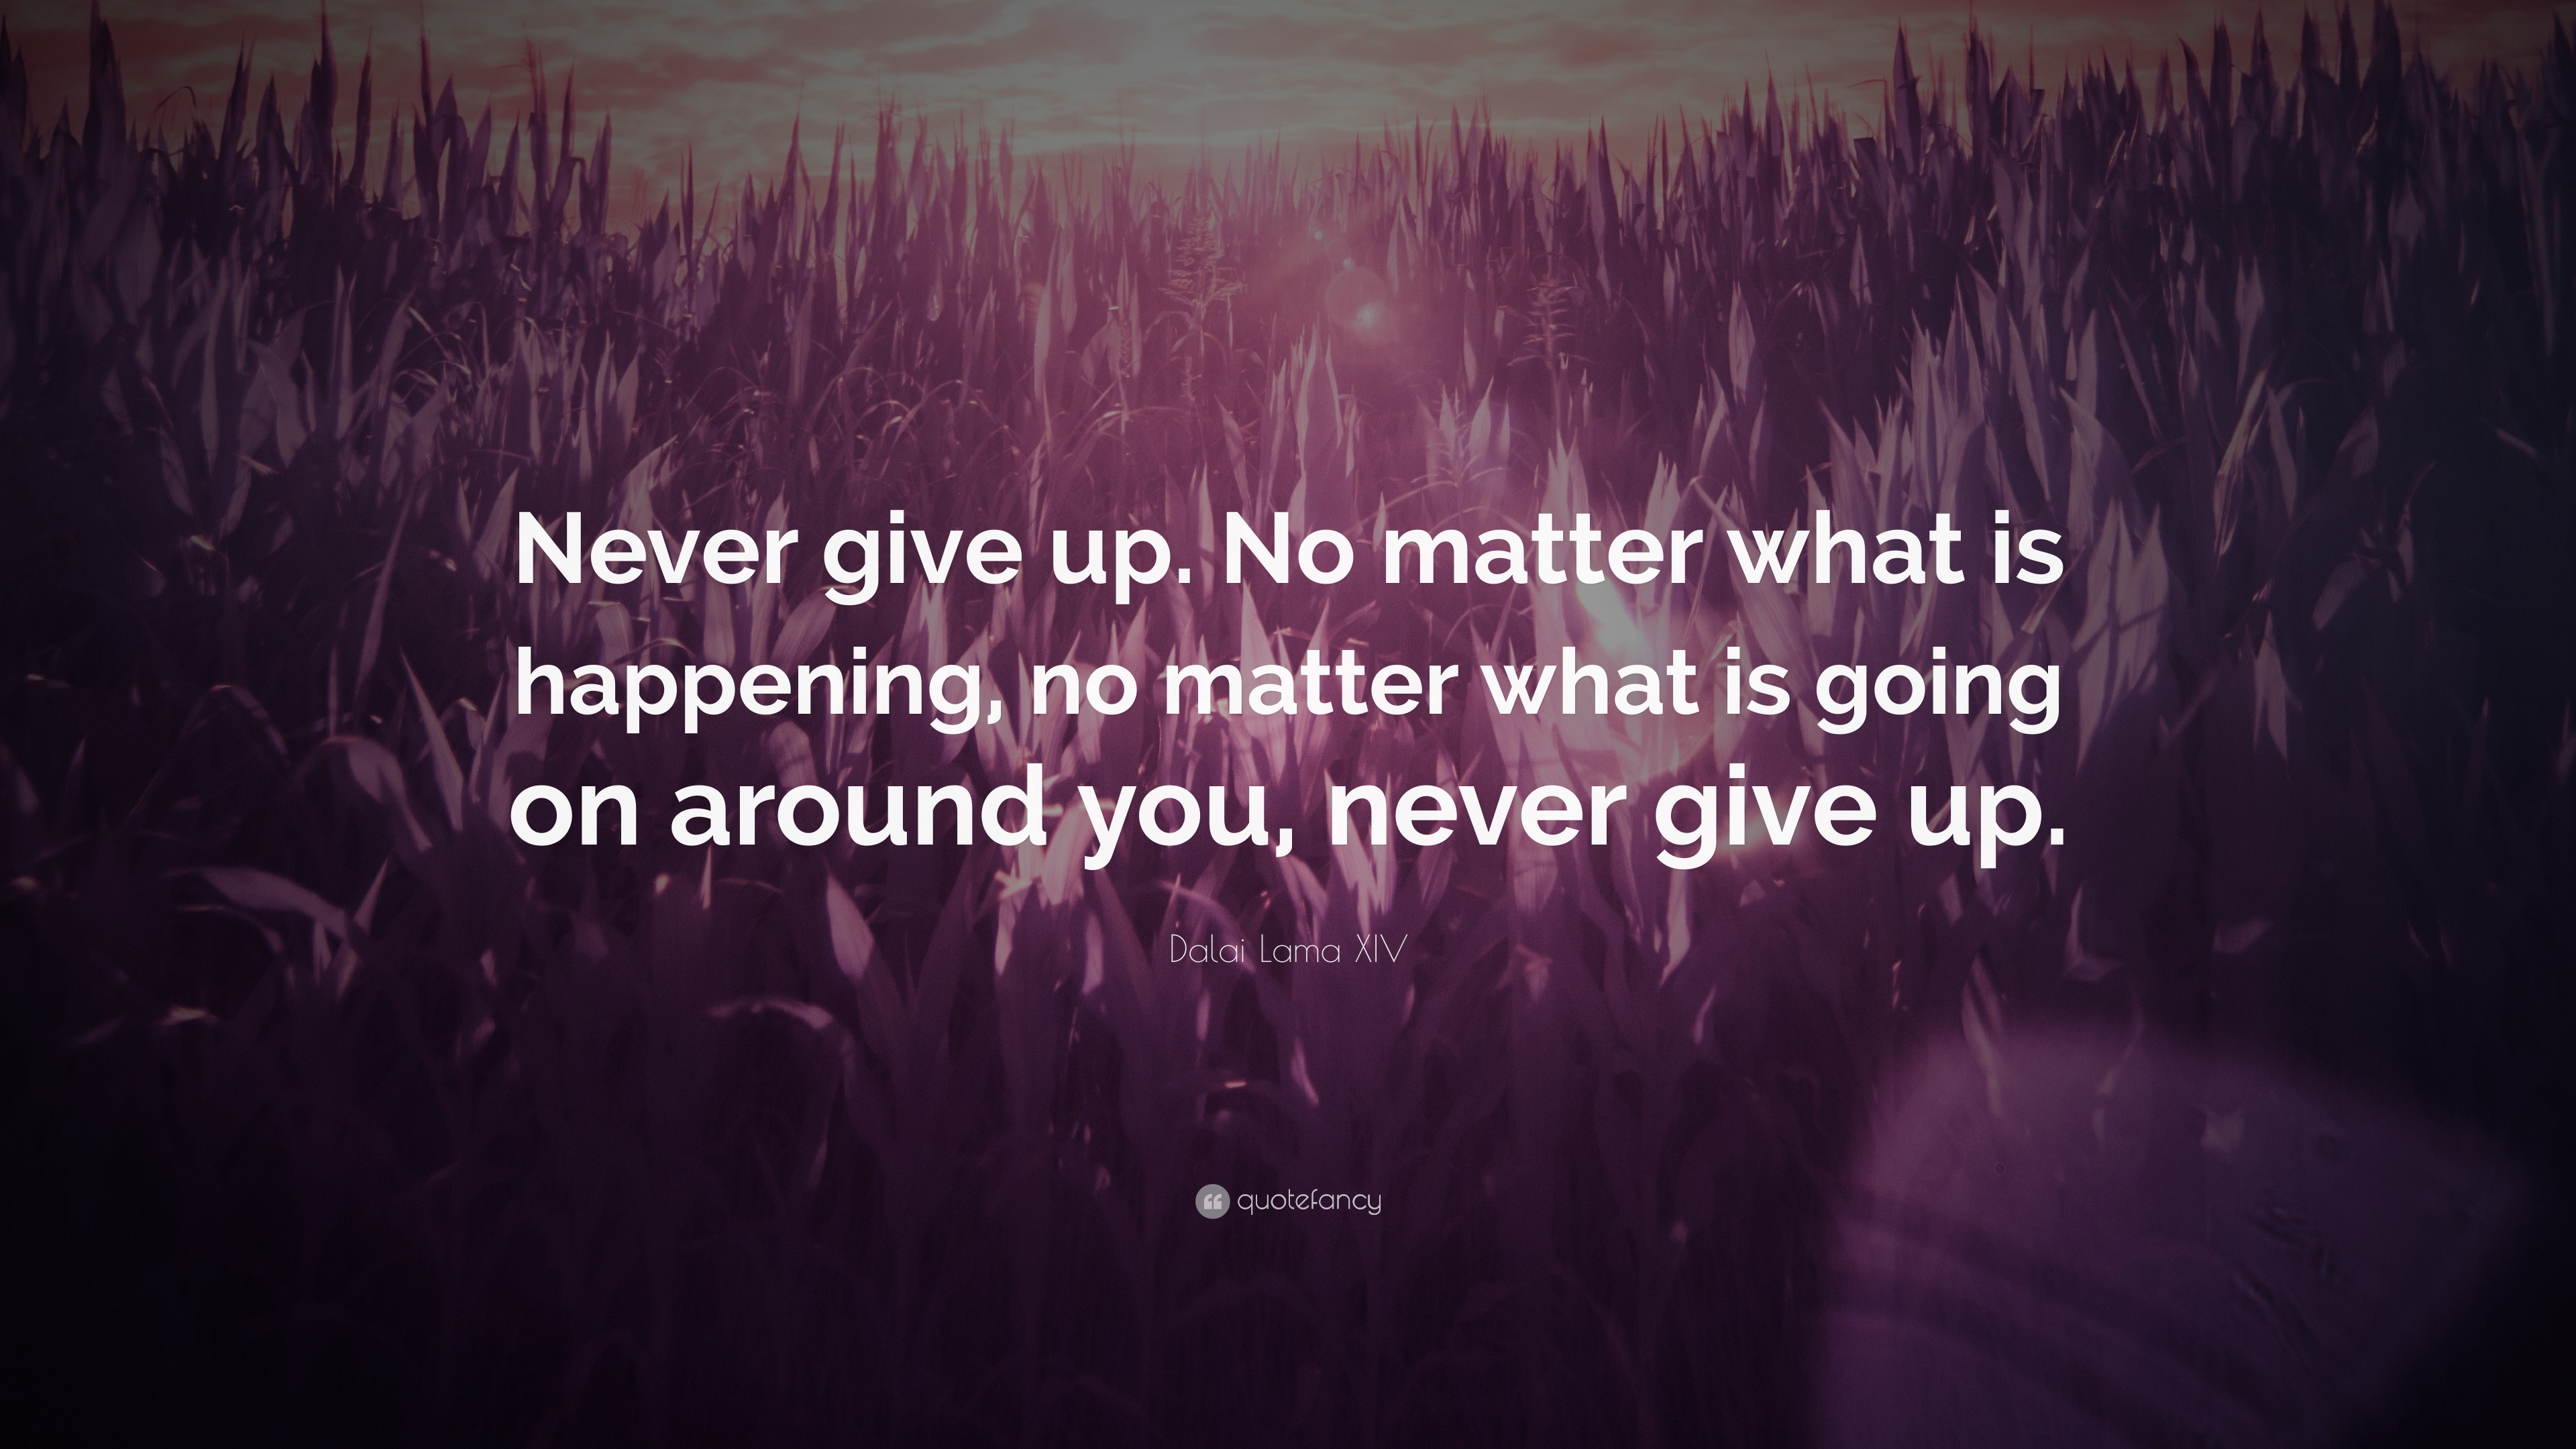 dalai lama quotes never give up